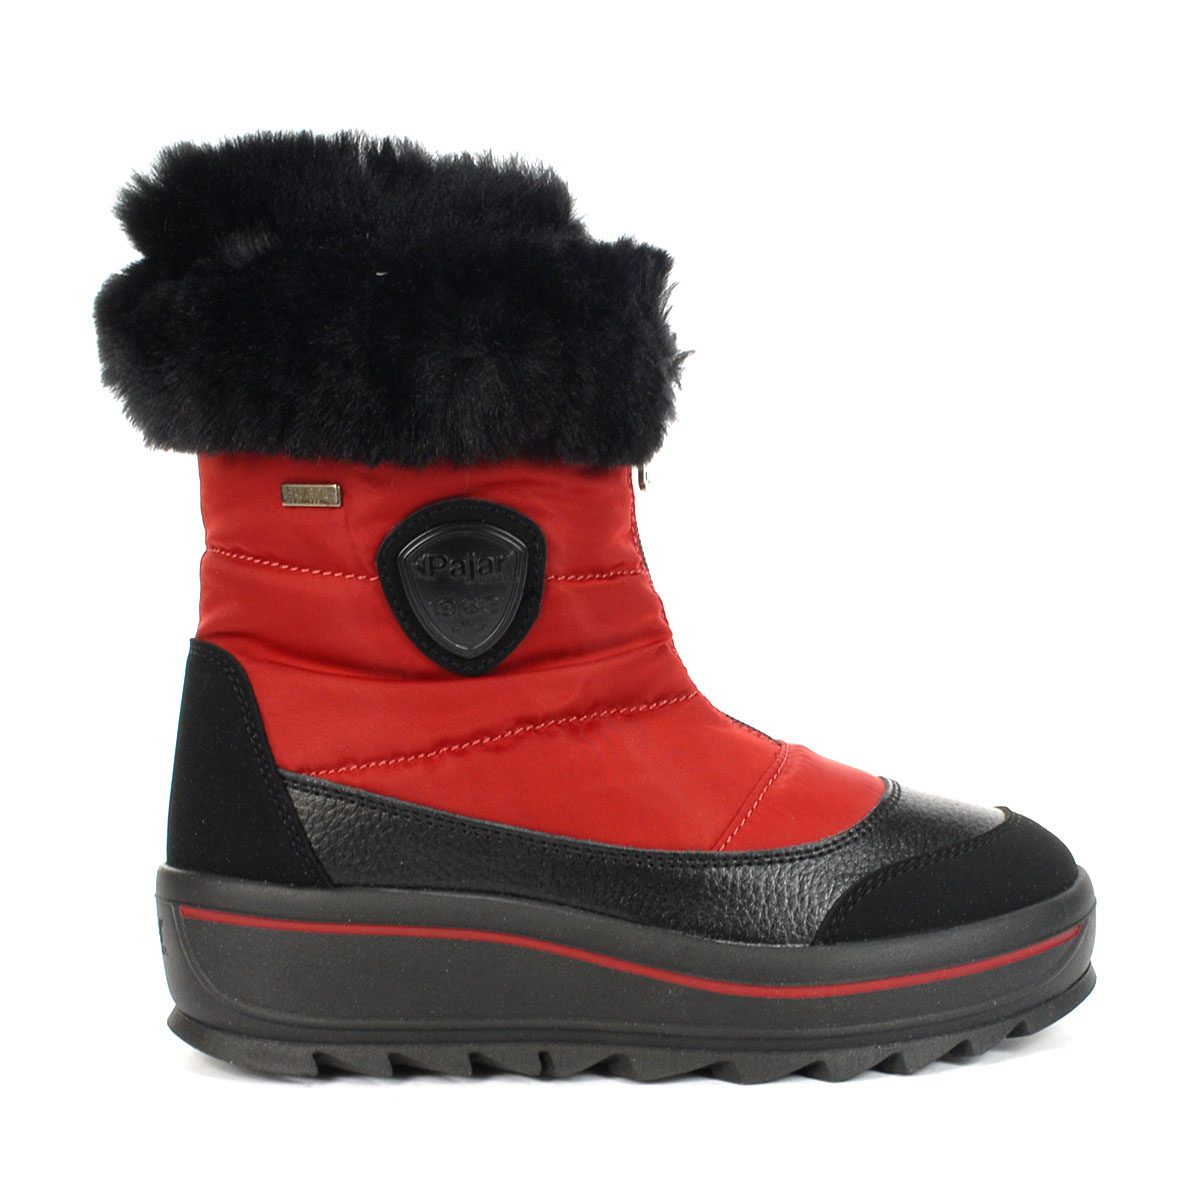 Pajar Women's Temoen Red Winter Boots